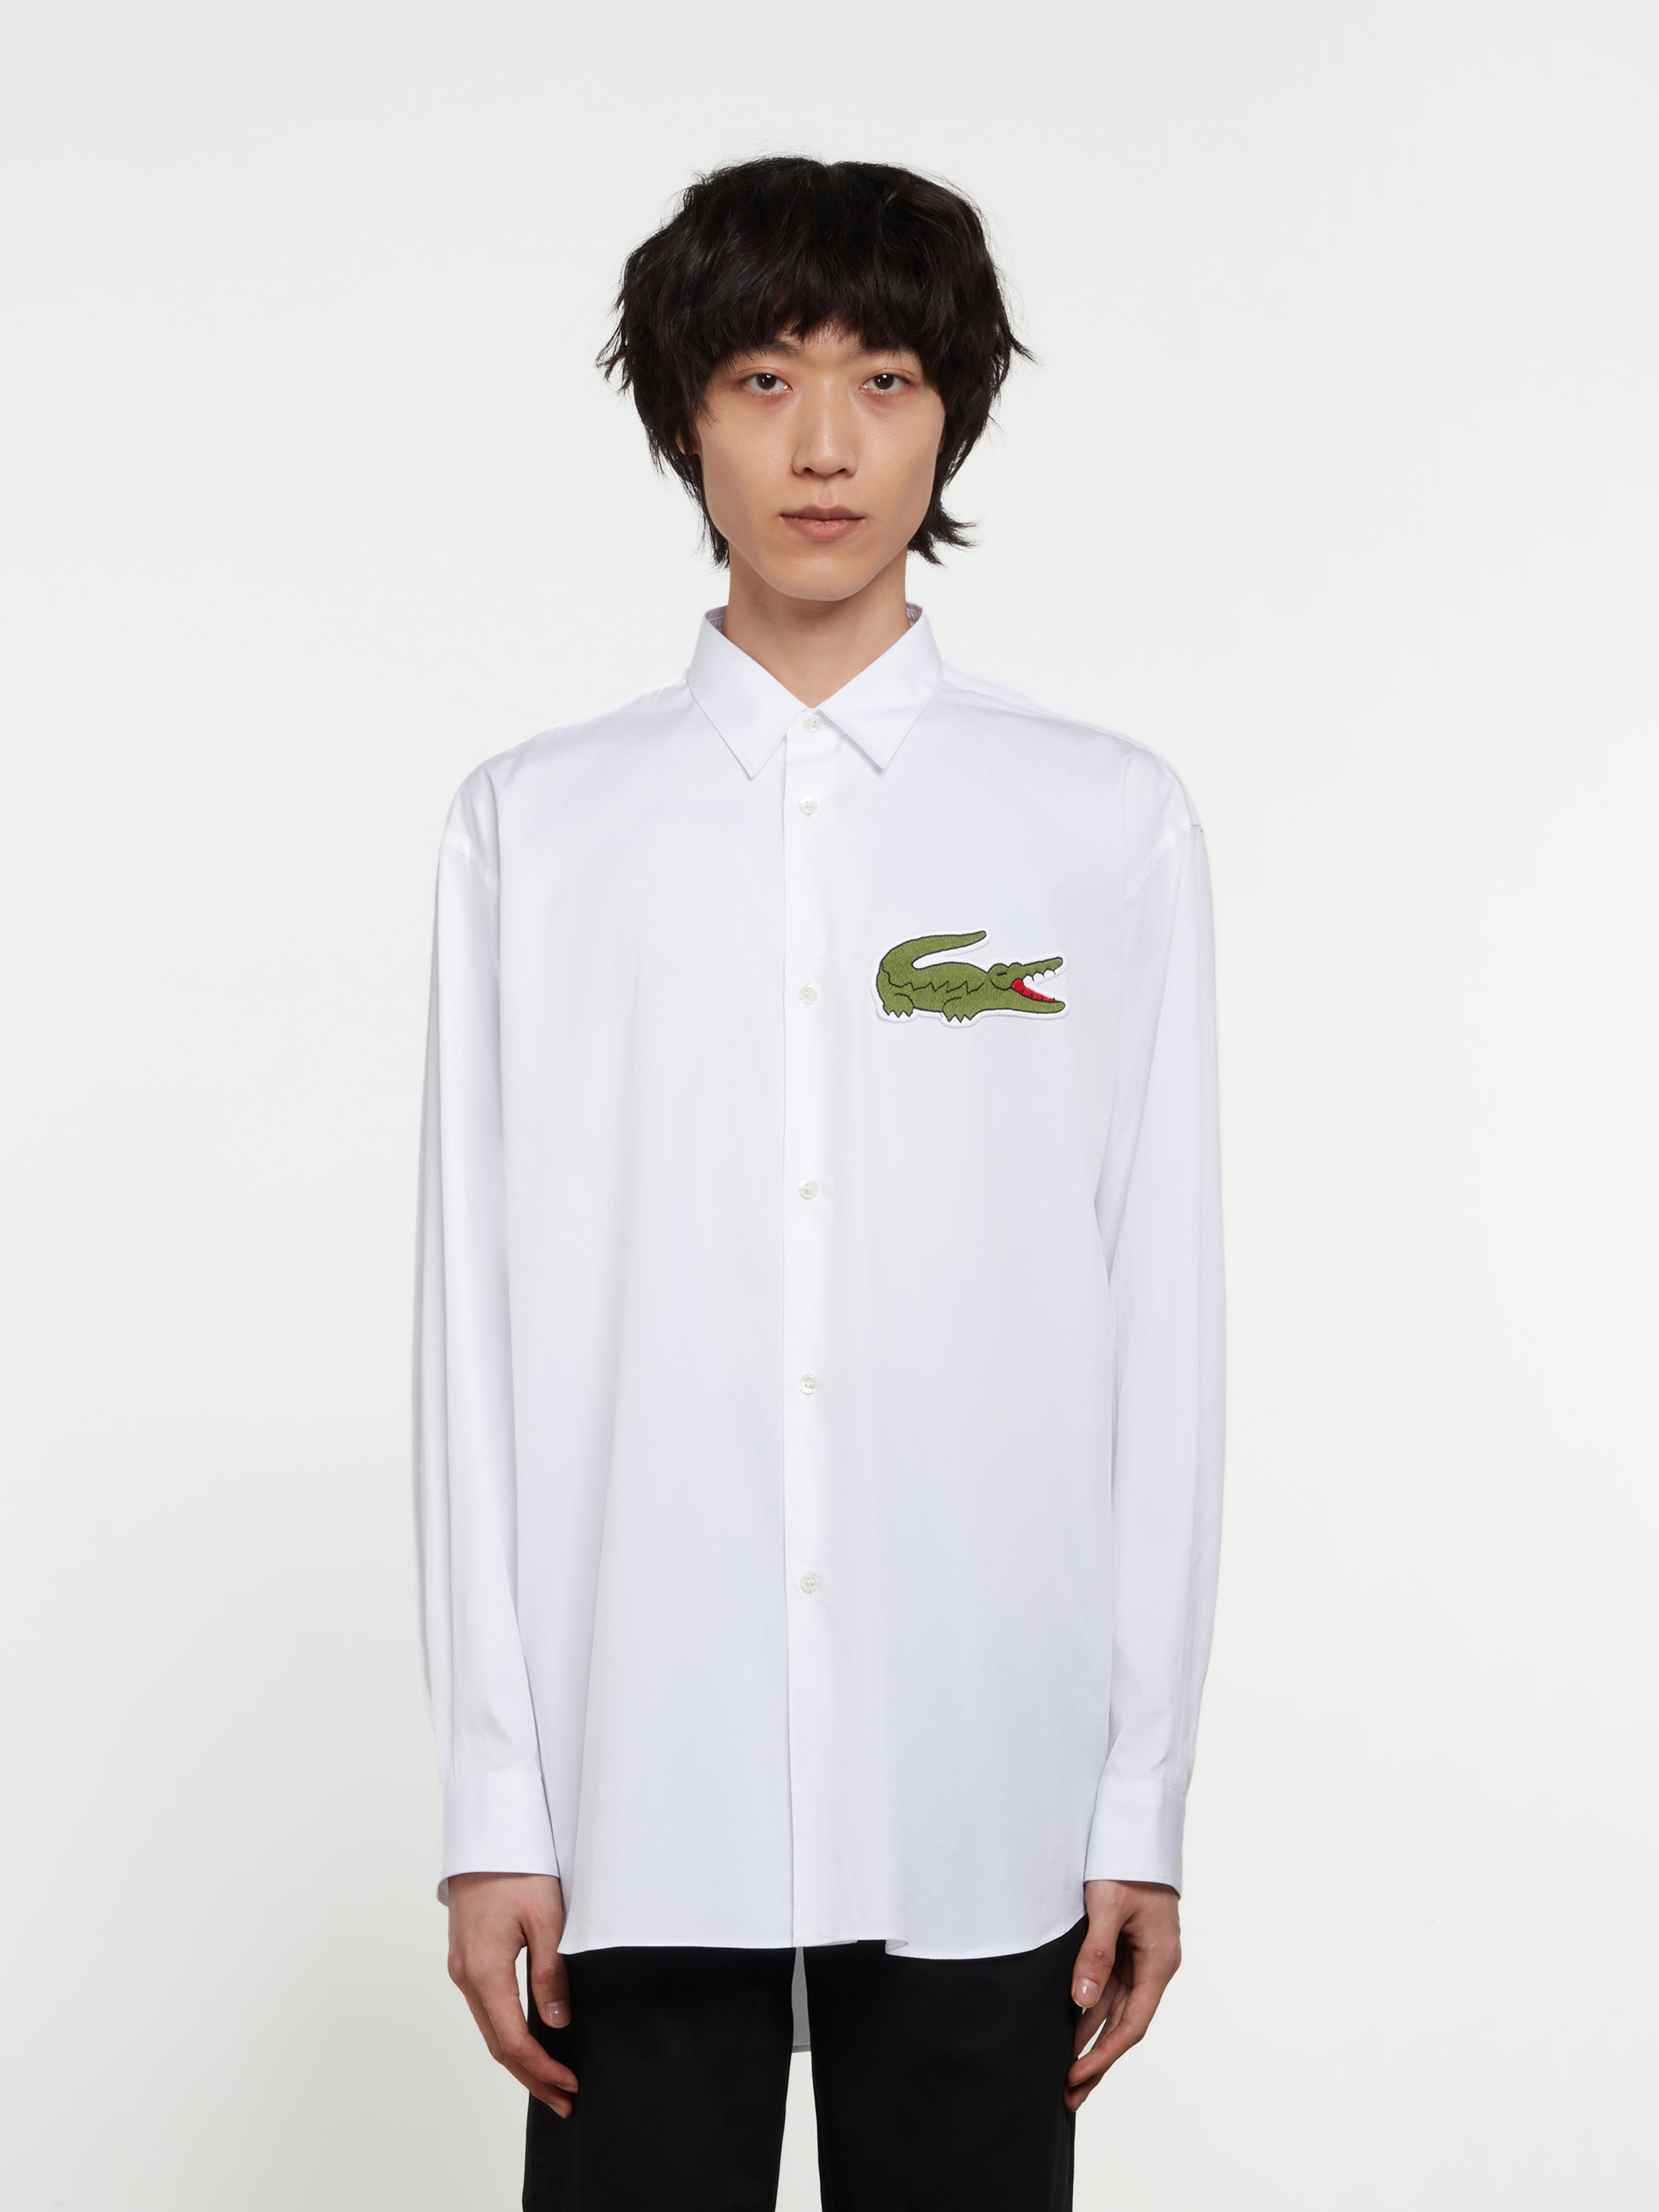 CDG Shirt - Lacoste Men’s Shirt - (White)